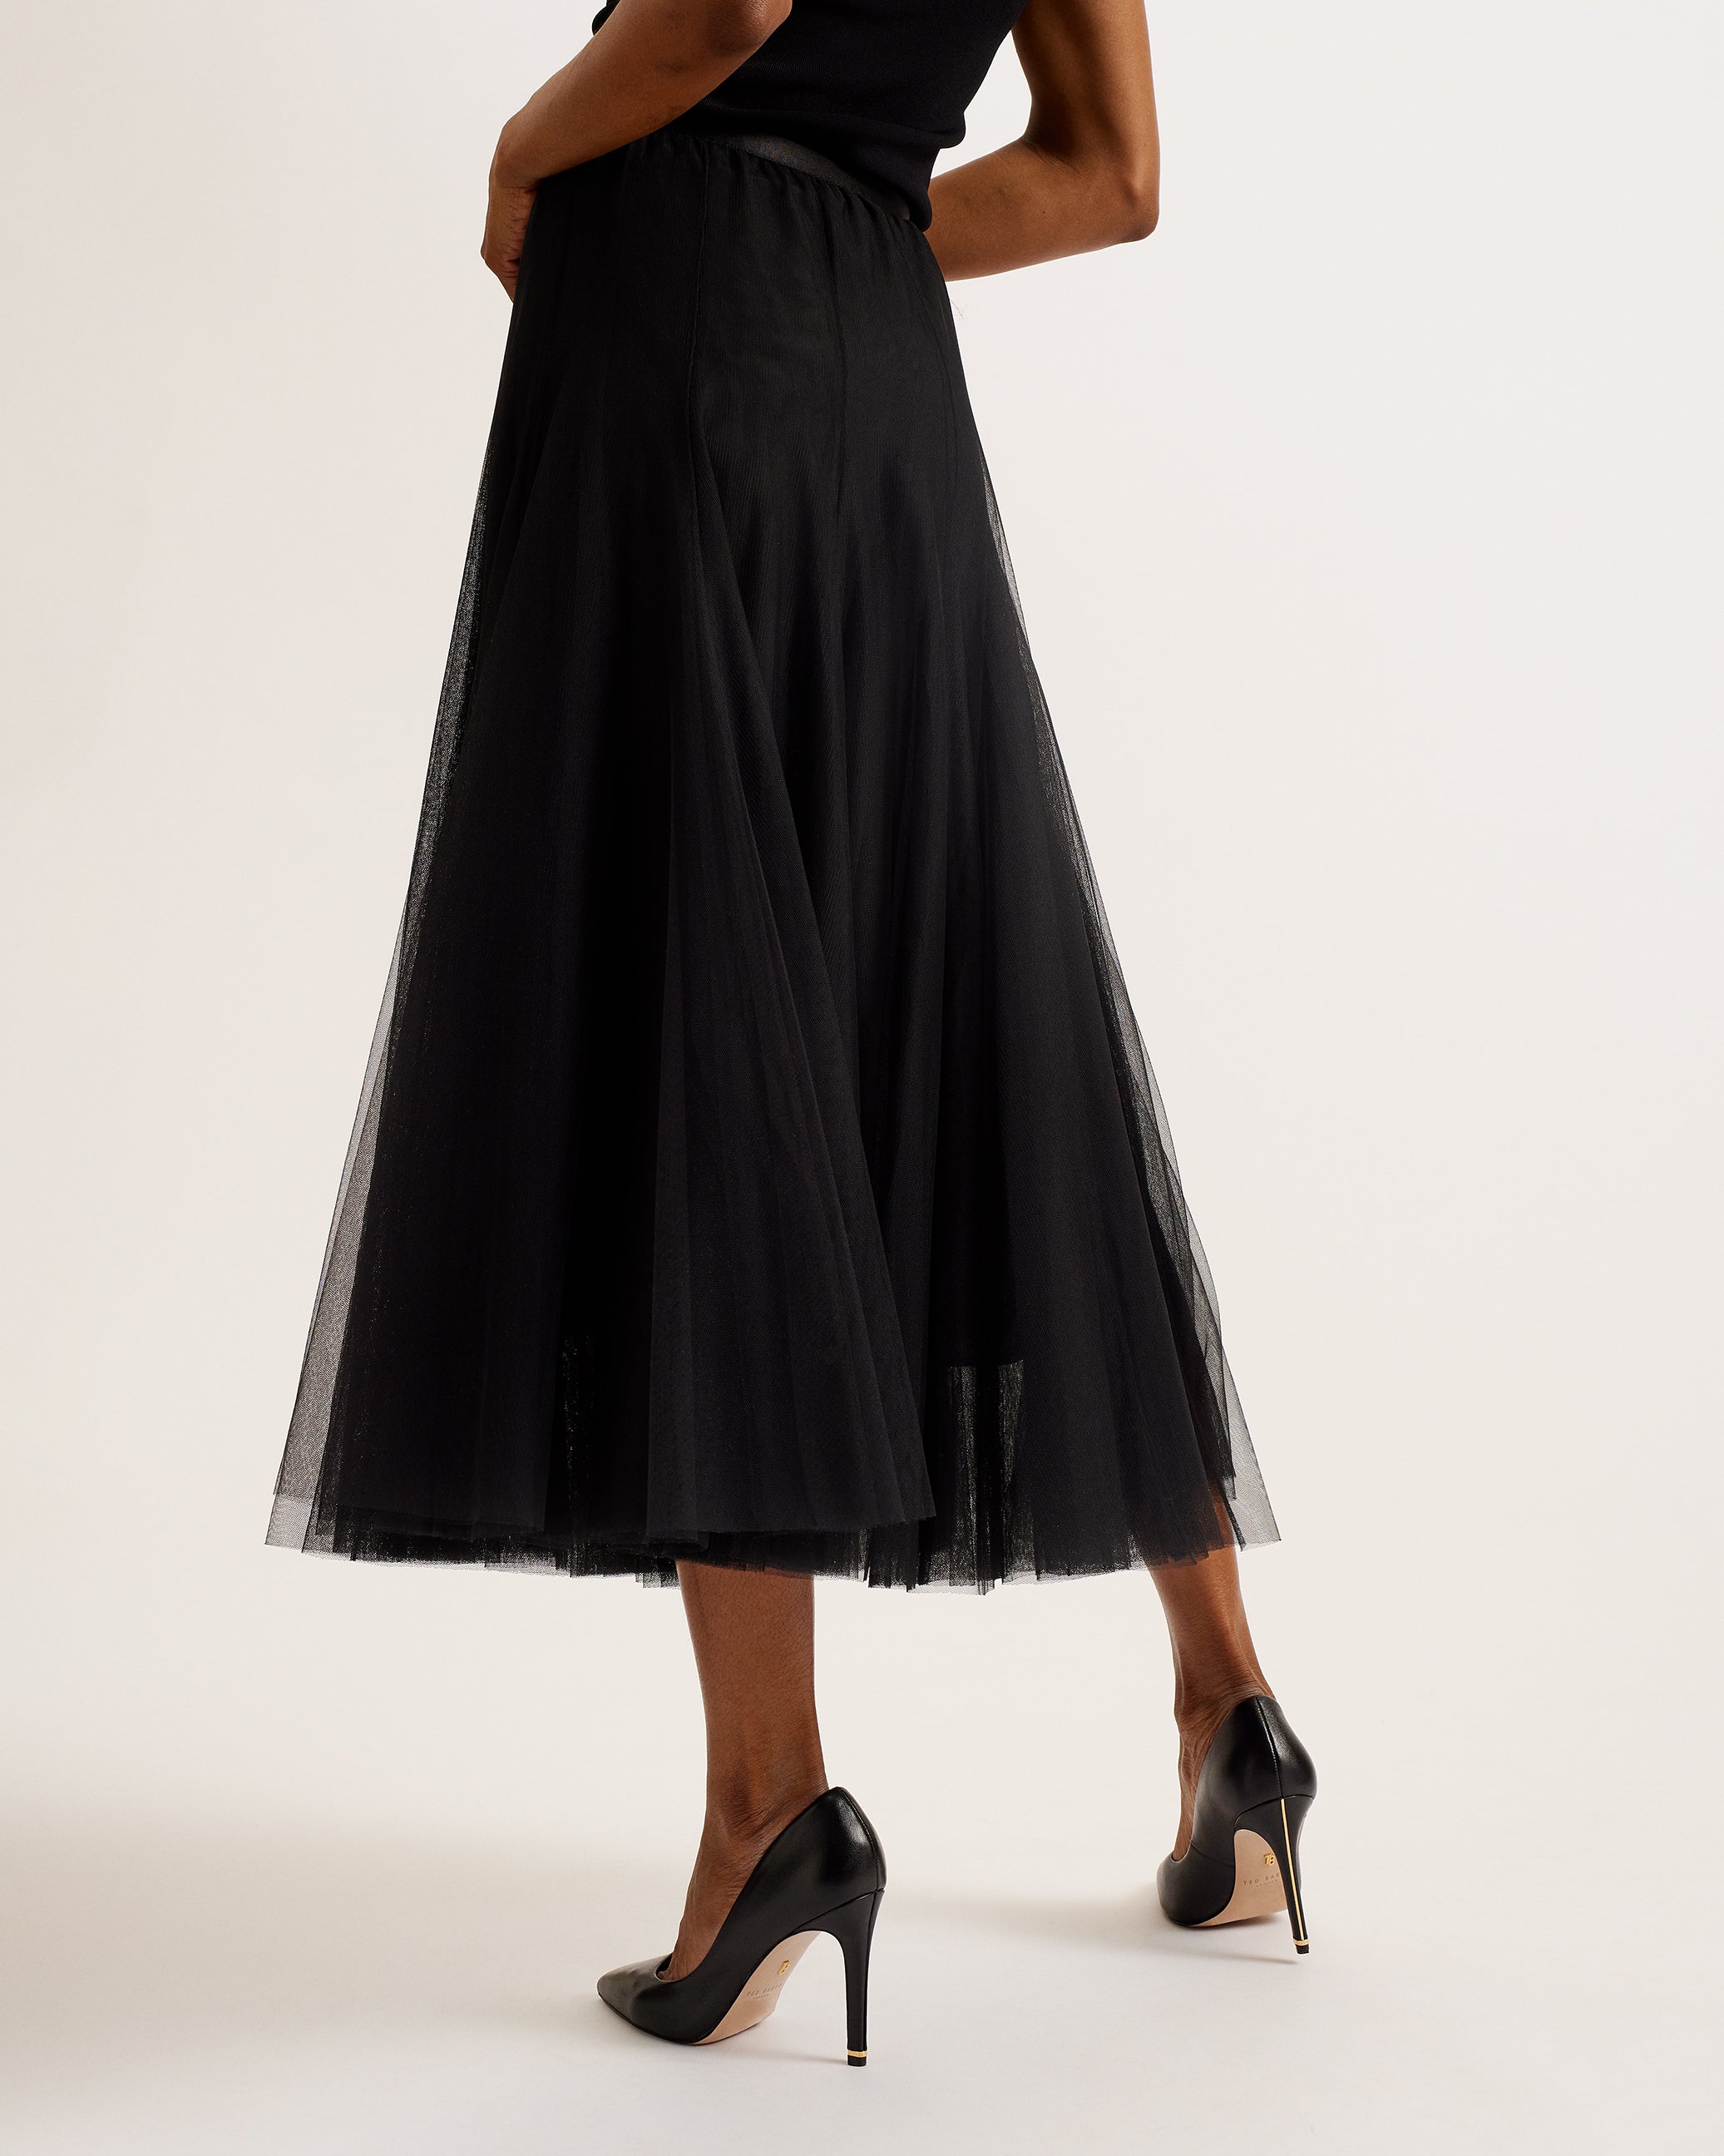 Akarii Midi Length Skirt With Insert Black